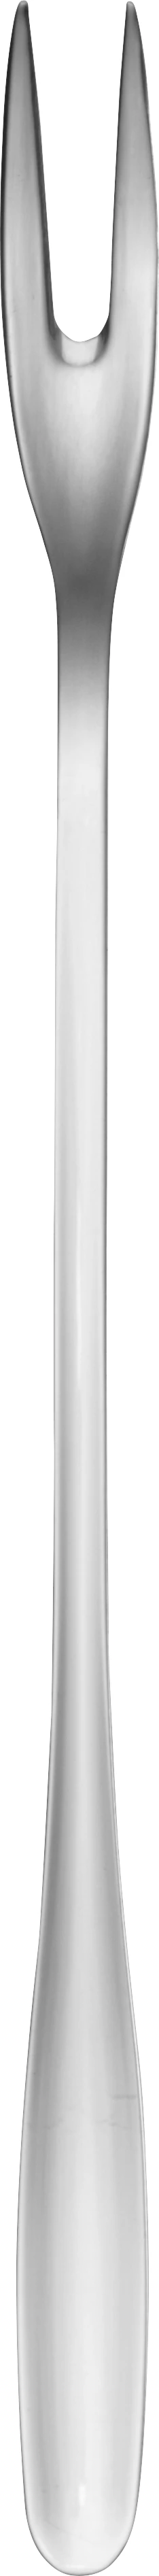 Glat pålægsgaffel, lang, L25 cm